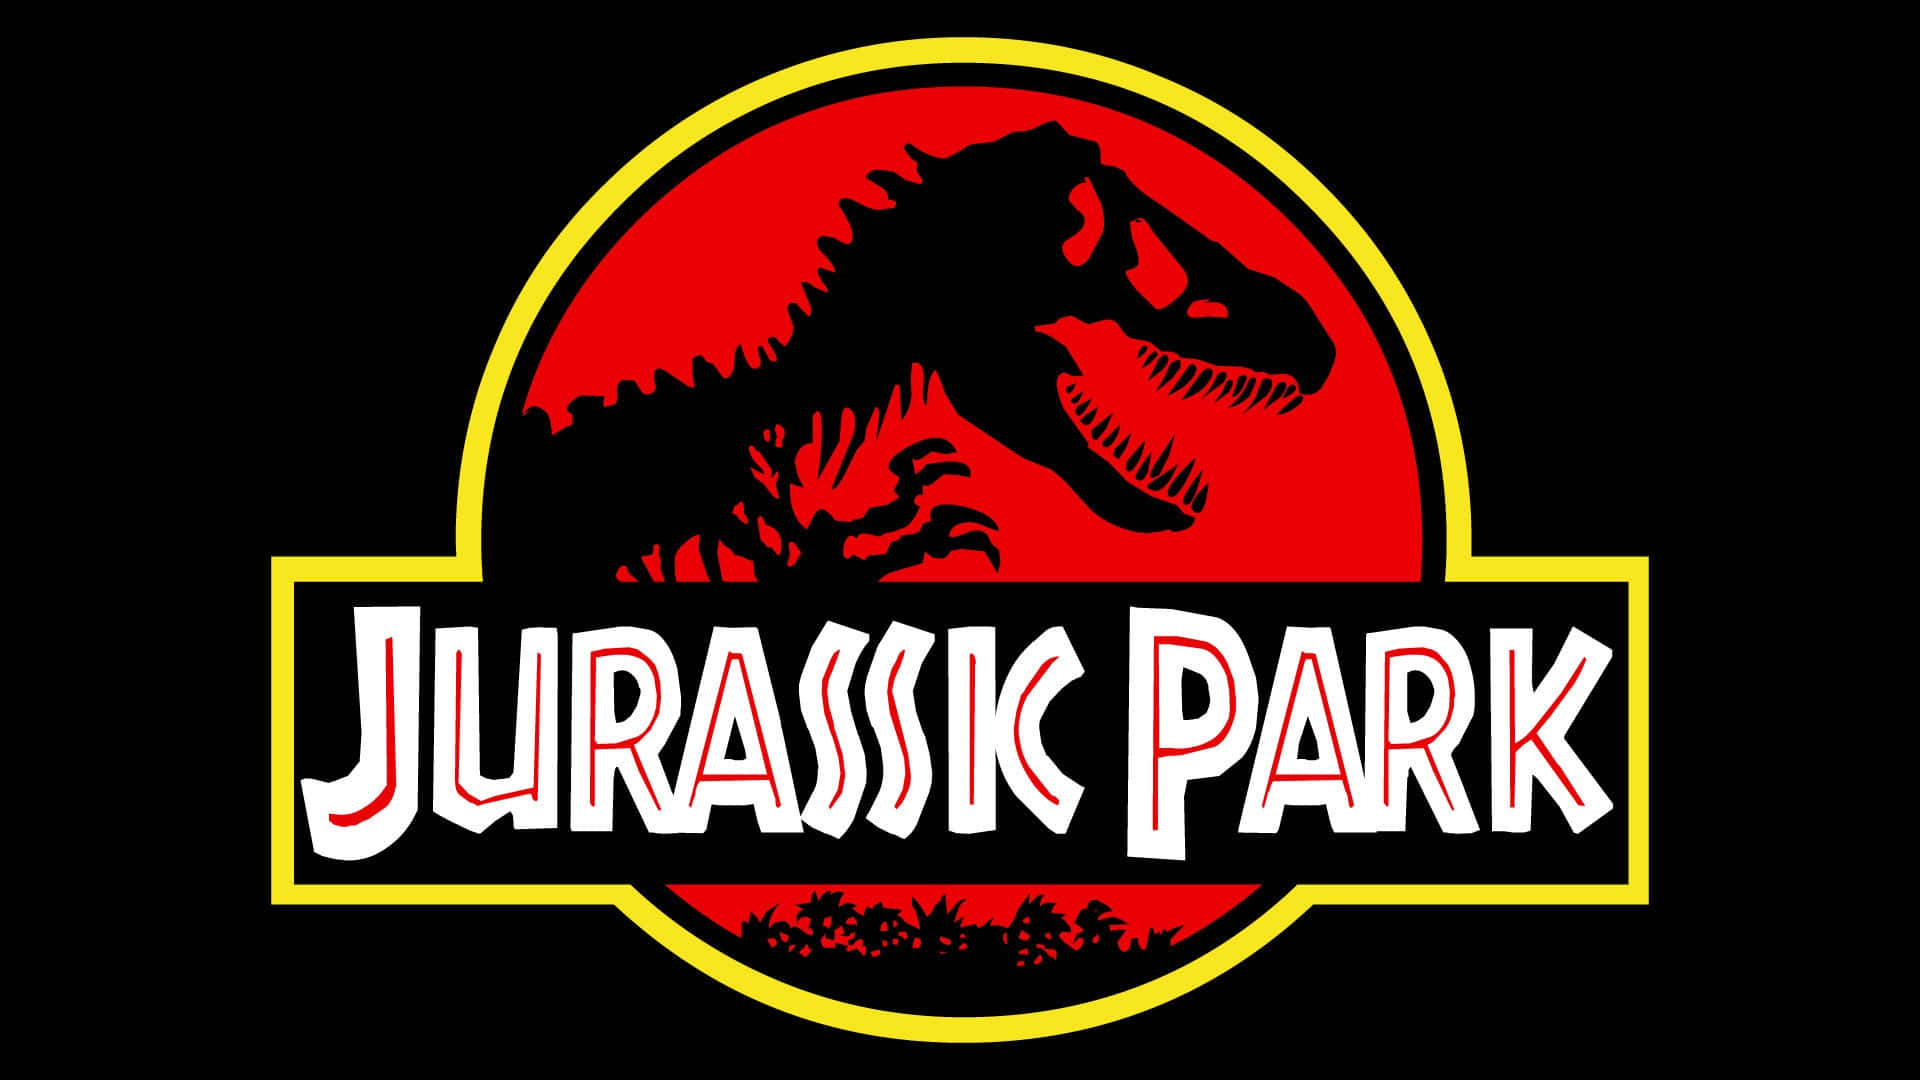 Jurassicpark-oplevelsen Genskabt I Et Betagende Landskab.